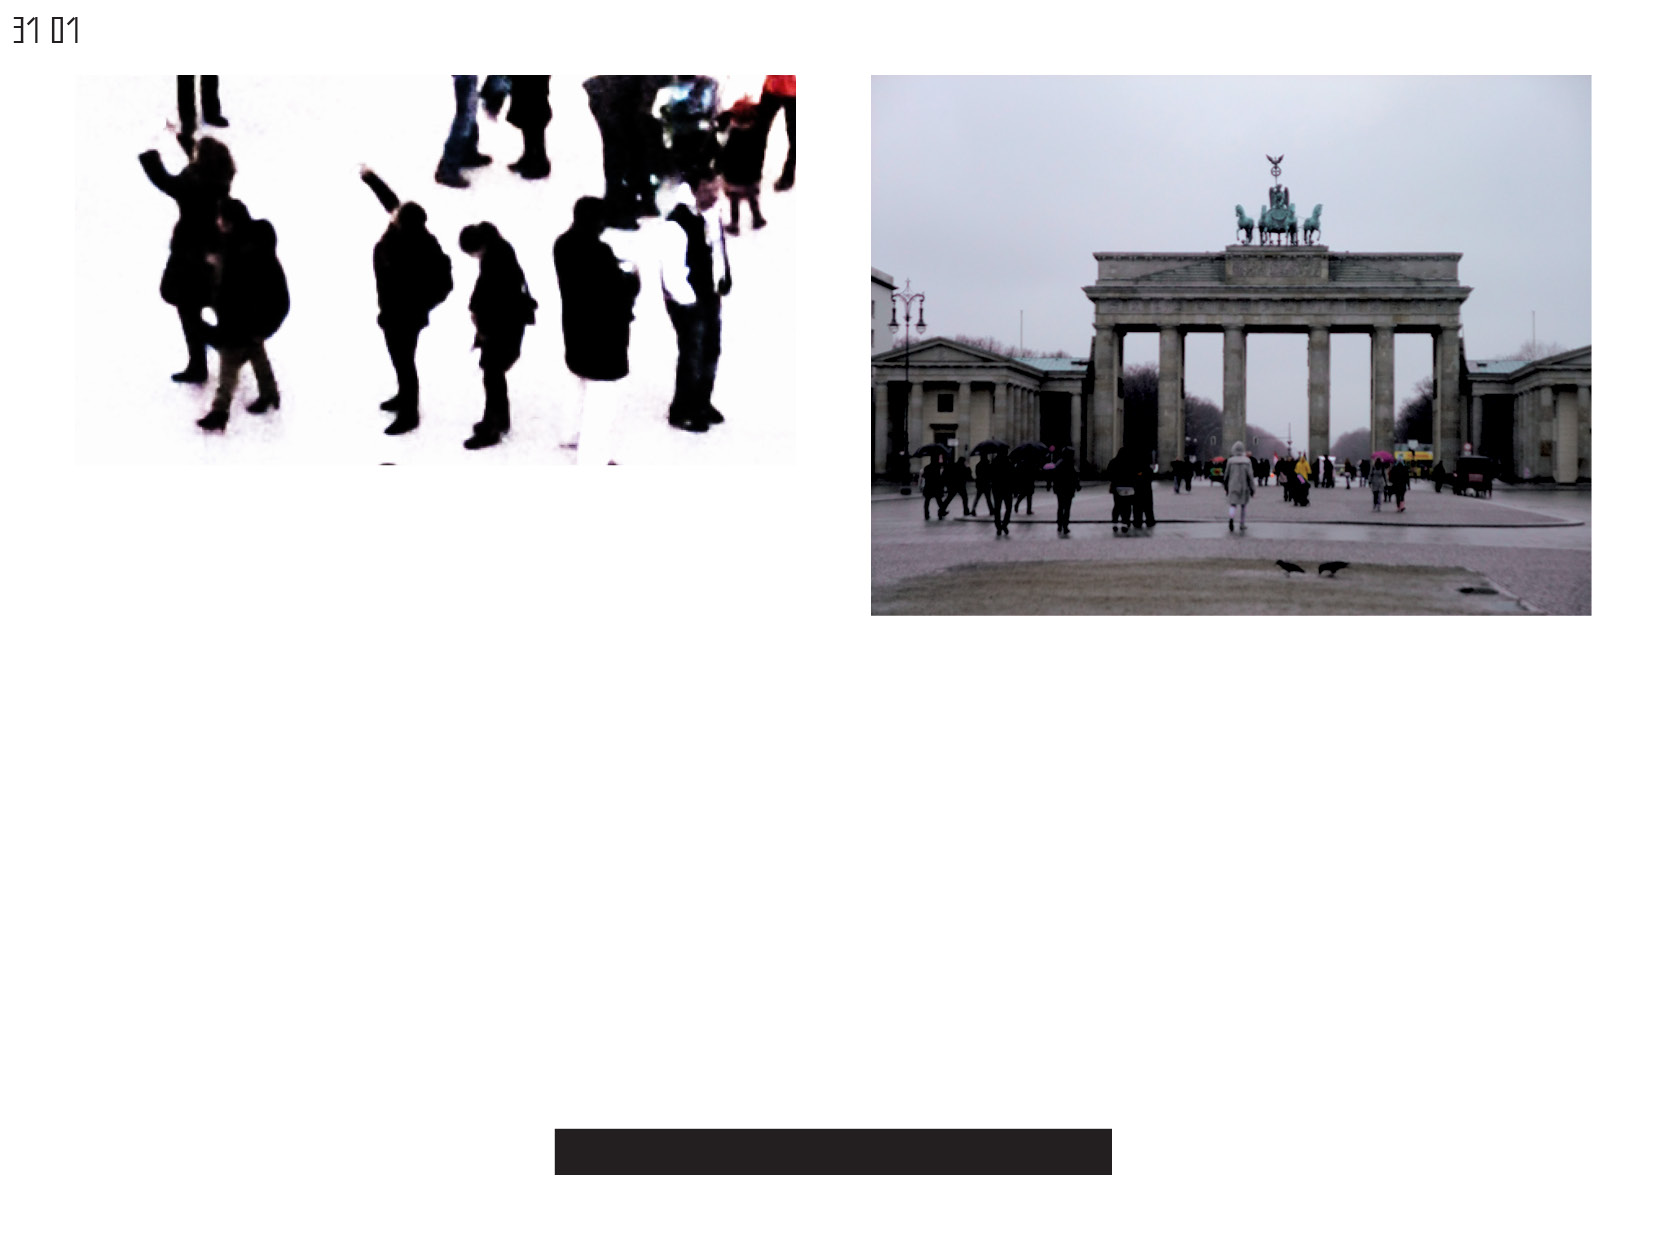 Gerrit-Schweiger-Dialog-Städte-Paris-Berlin-Jessica-Blank-Experiment-Fotoserie-Tagebuch-visuelle-Kommunikation-91